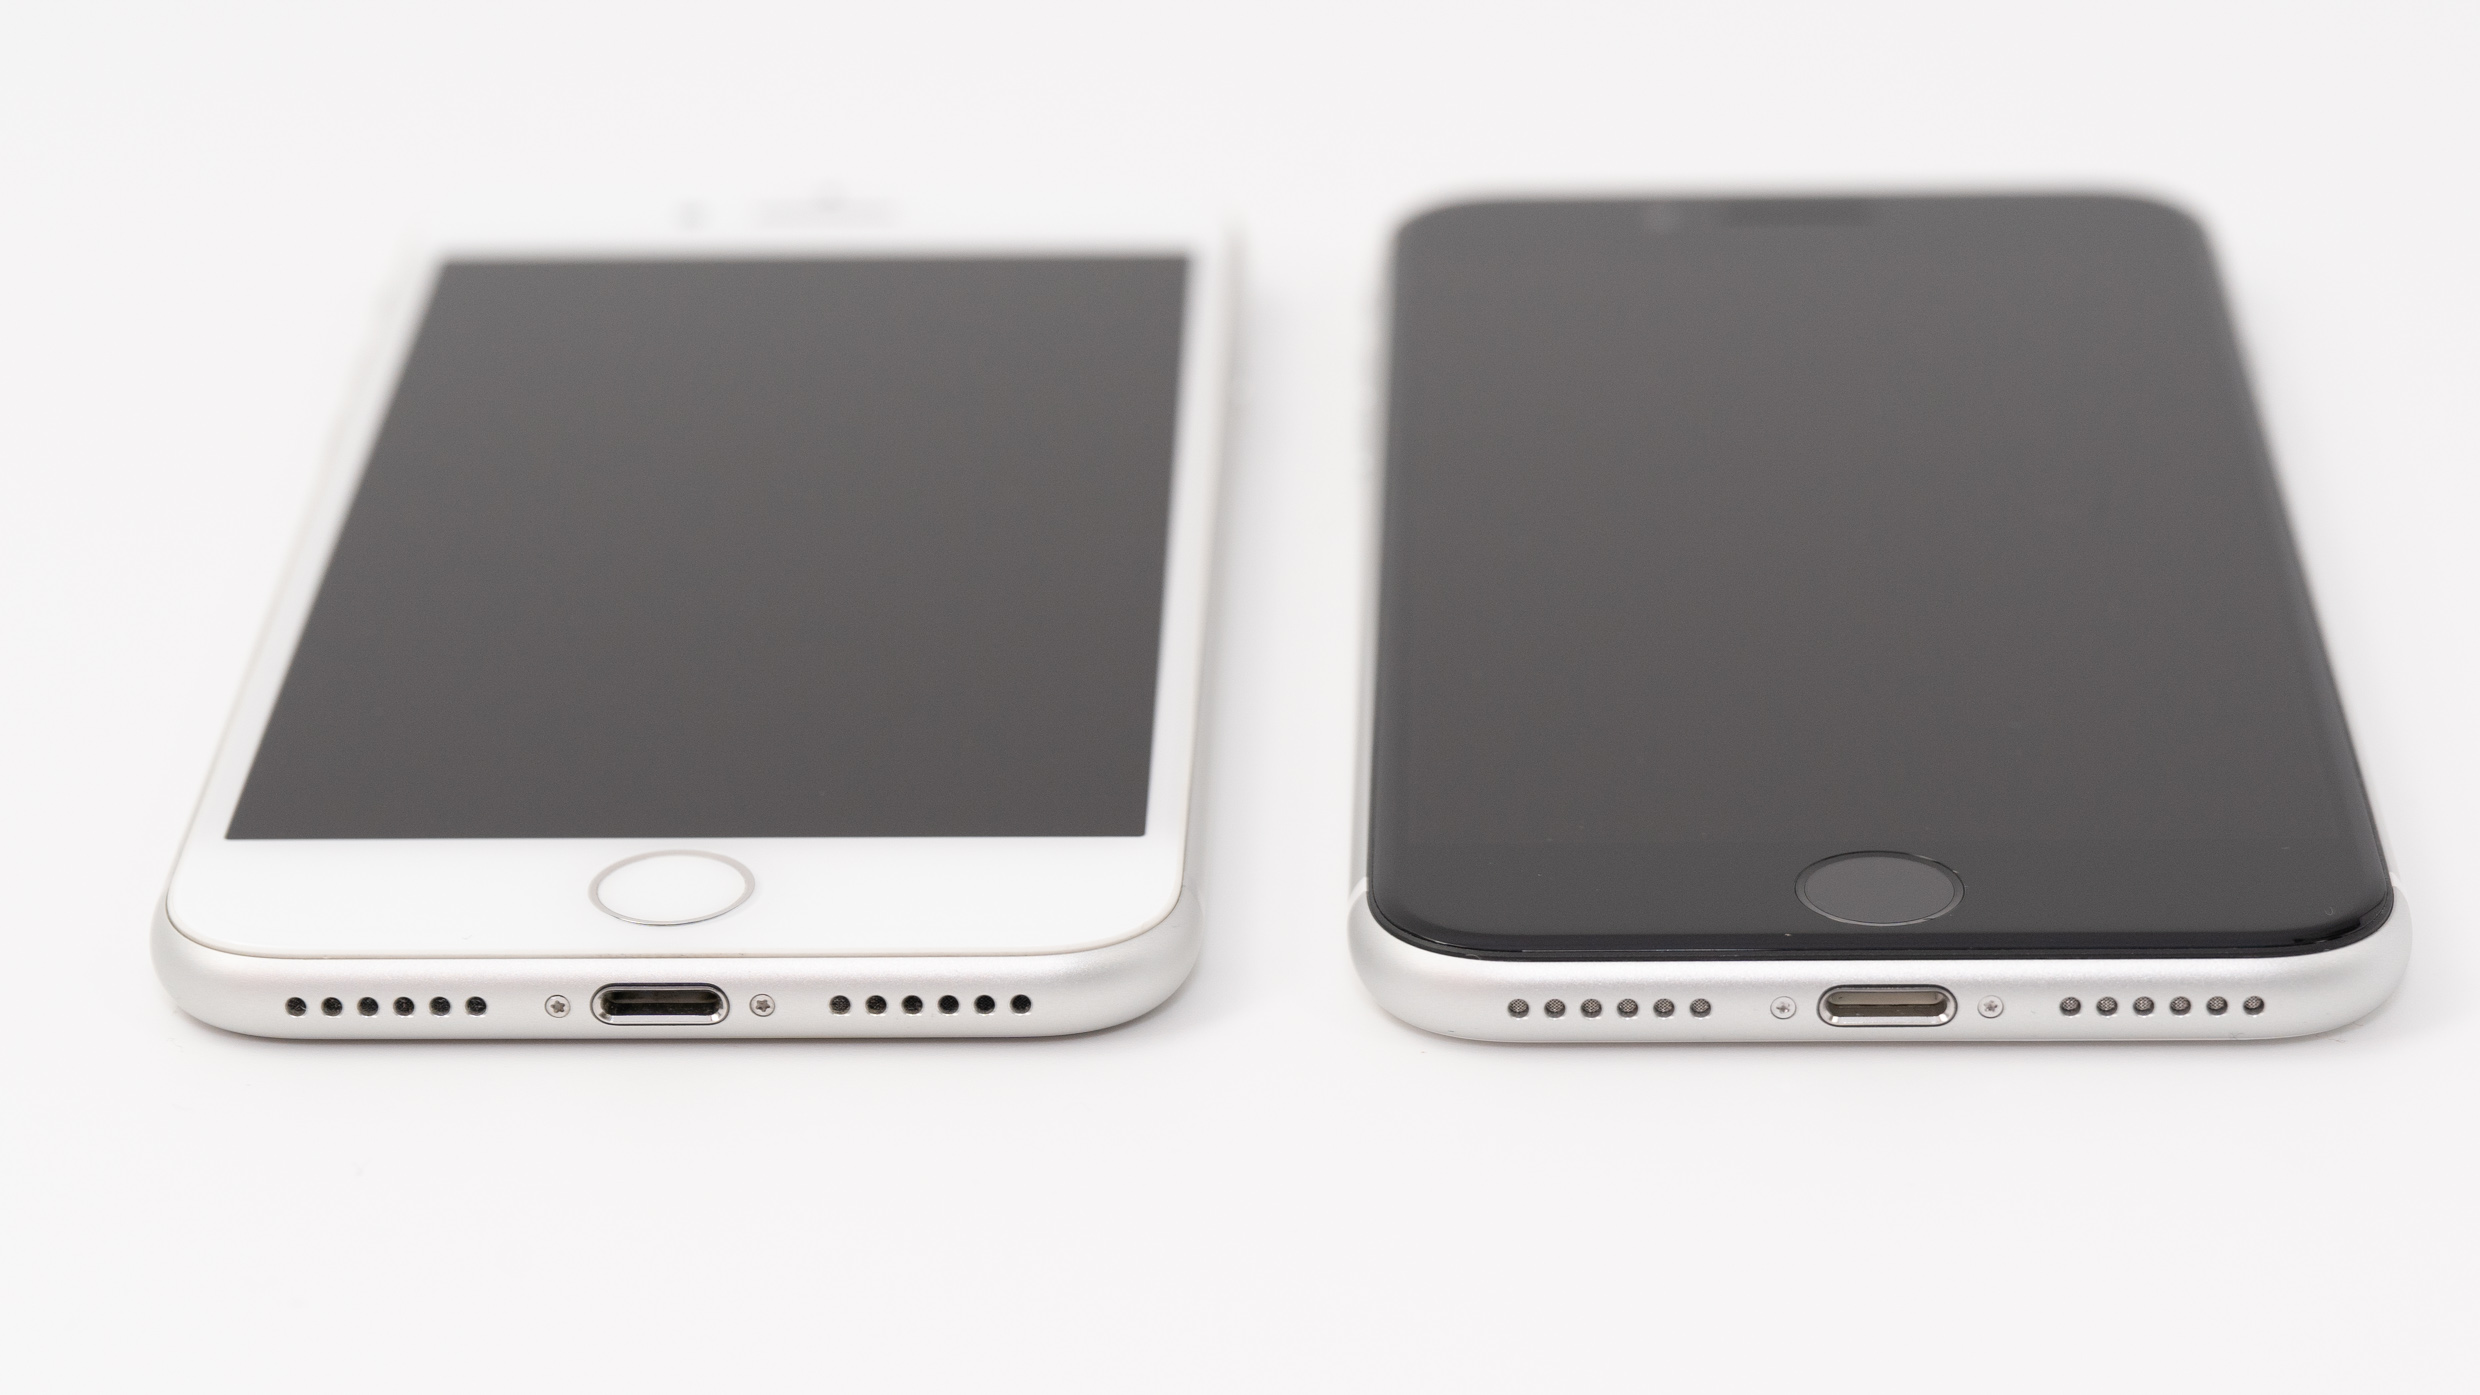 Iphone Se 2世代目 とiphone 8の見た目の細かい違いを比較 Apple